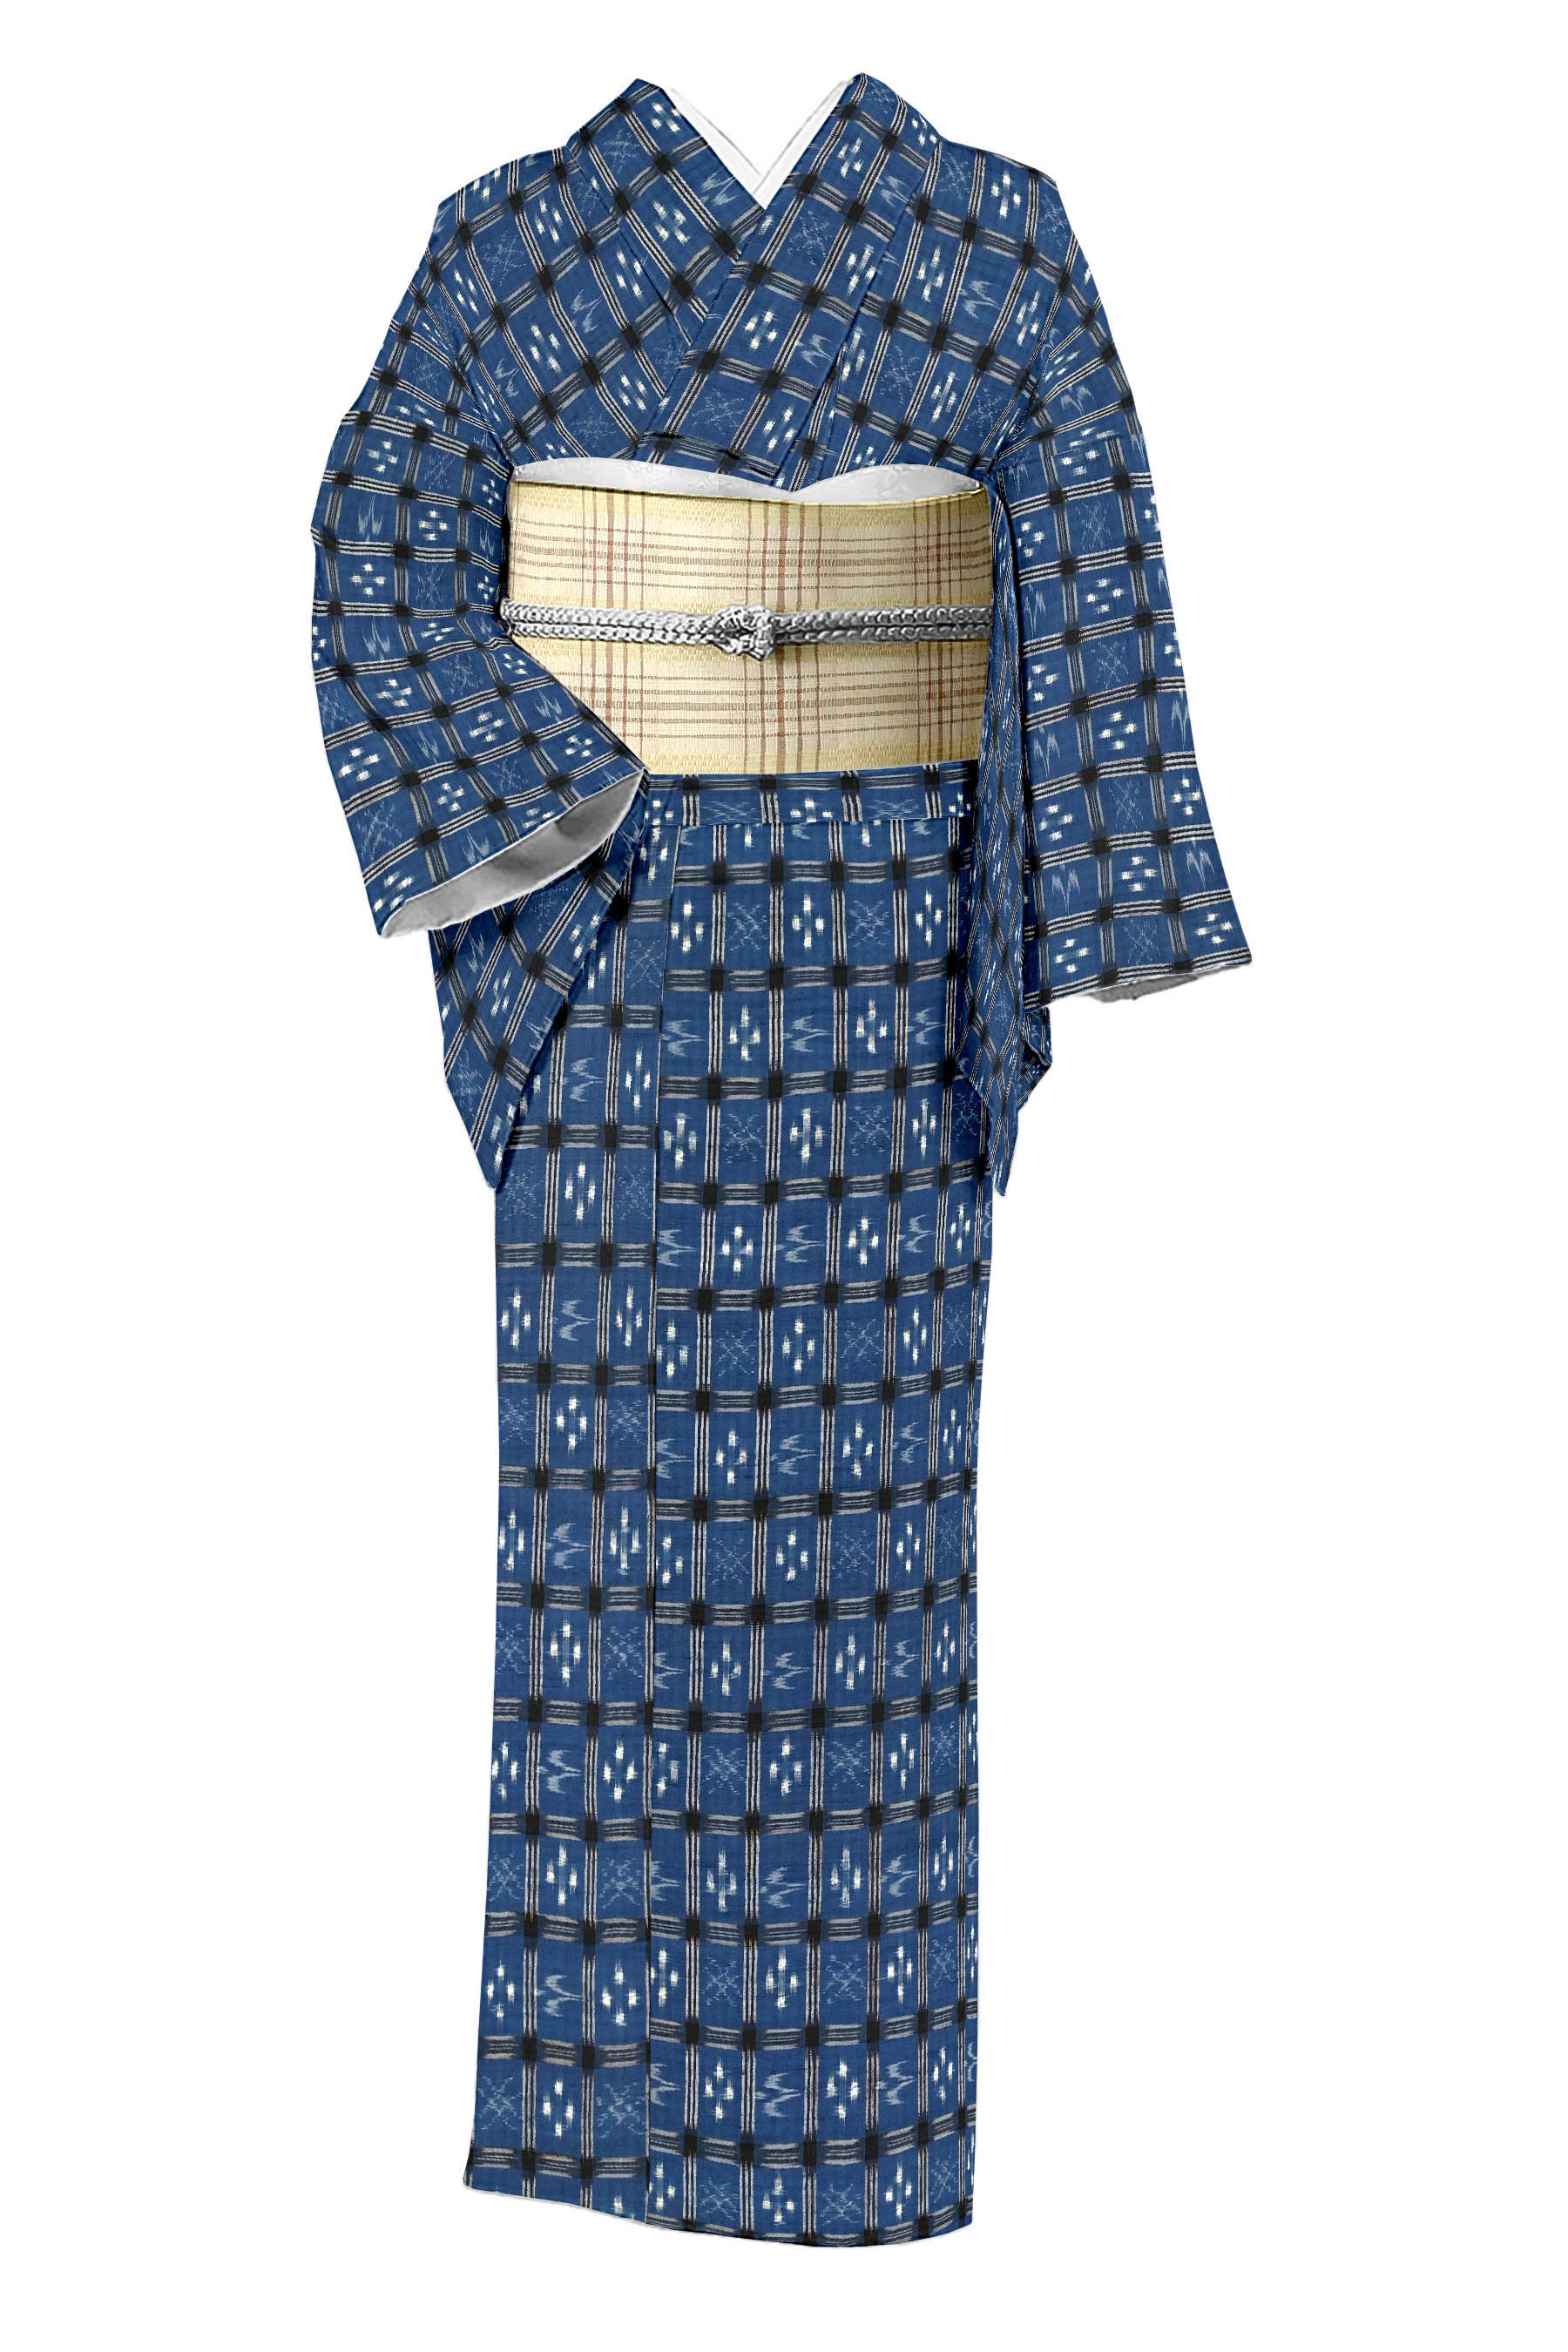 正絹手縫い 琉球絣の作務衣着物 フリーサイズ - 素材/材料